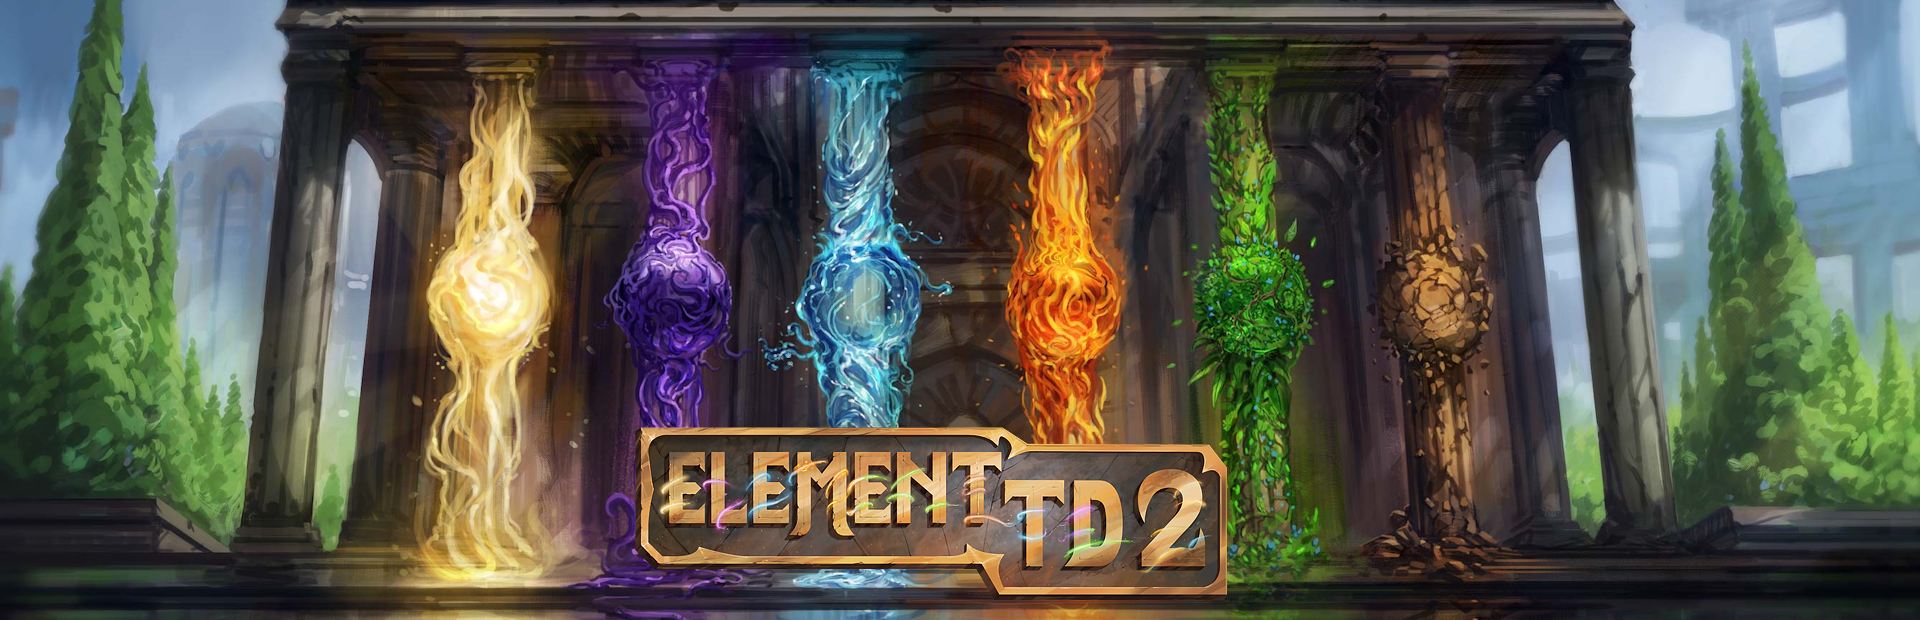 دانلود بازی Element TD 2 برای کامپیوتر | گیمباتو